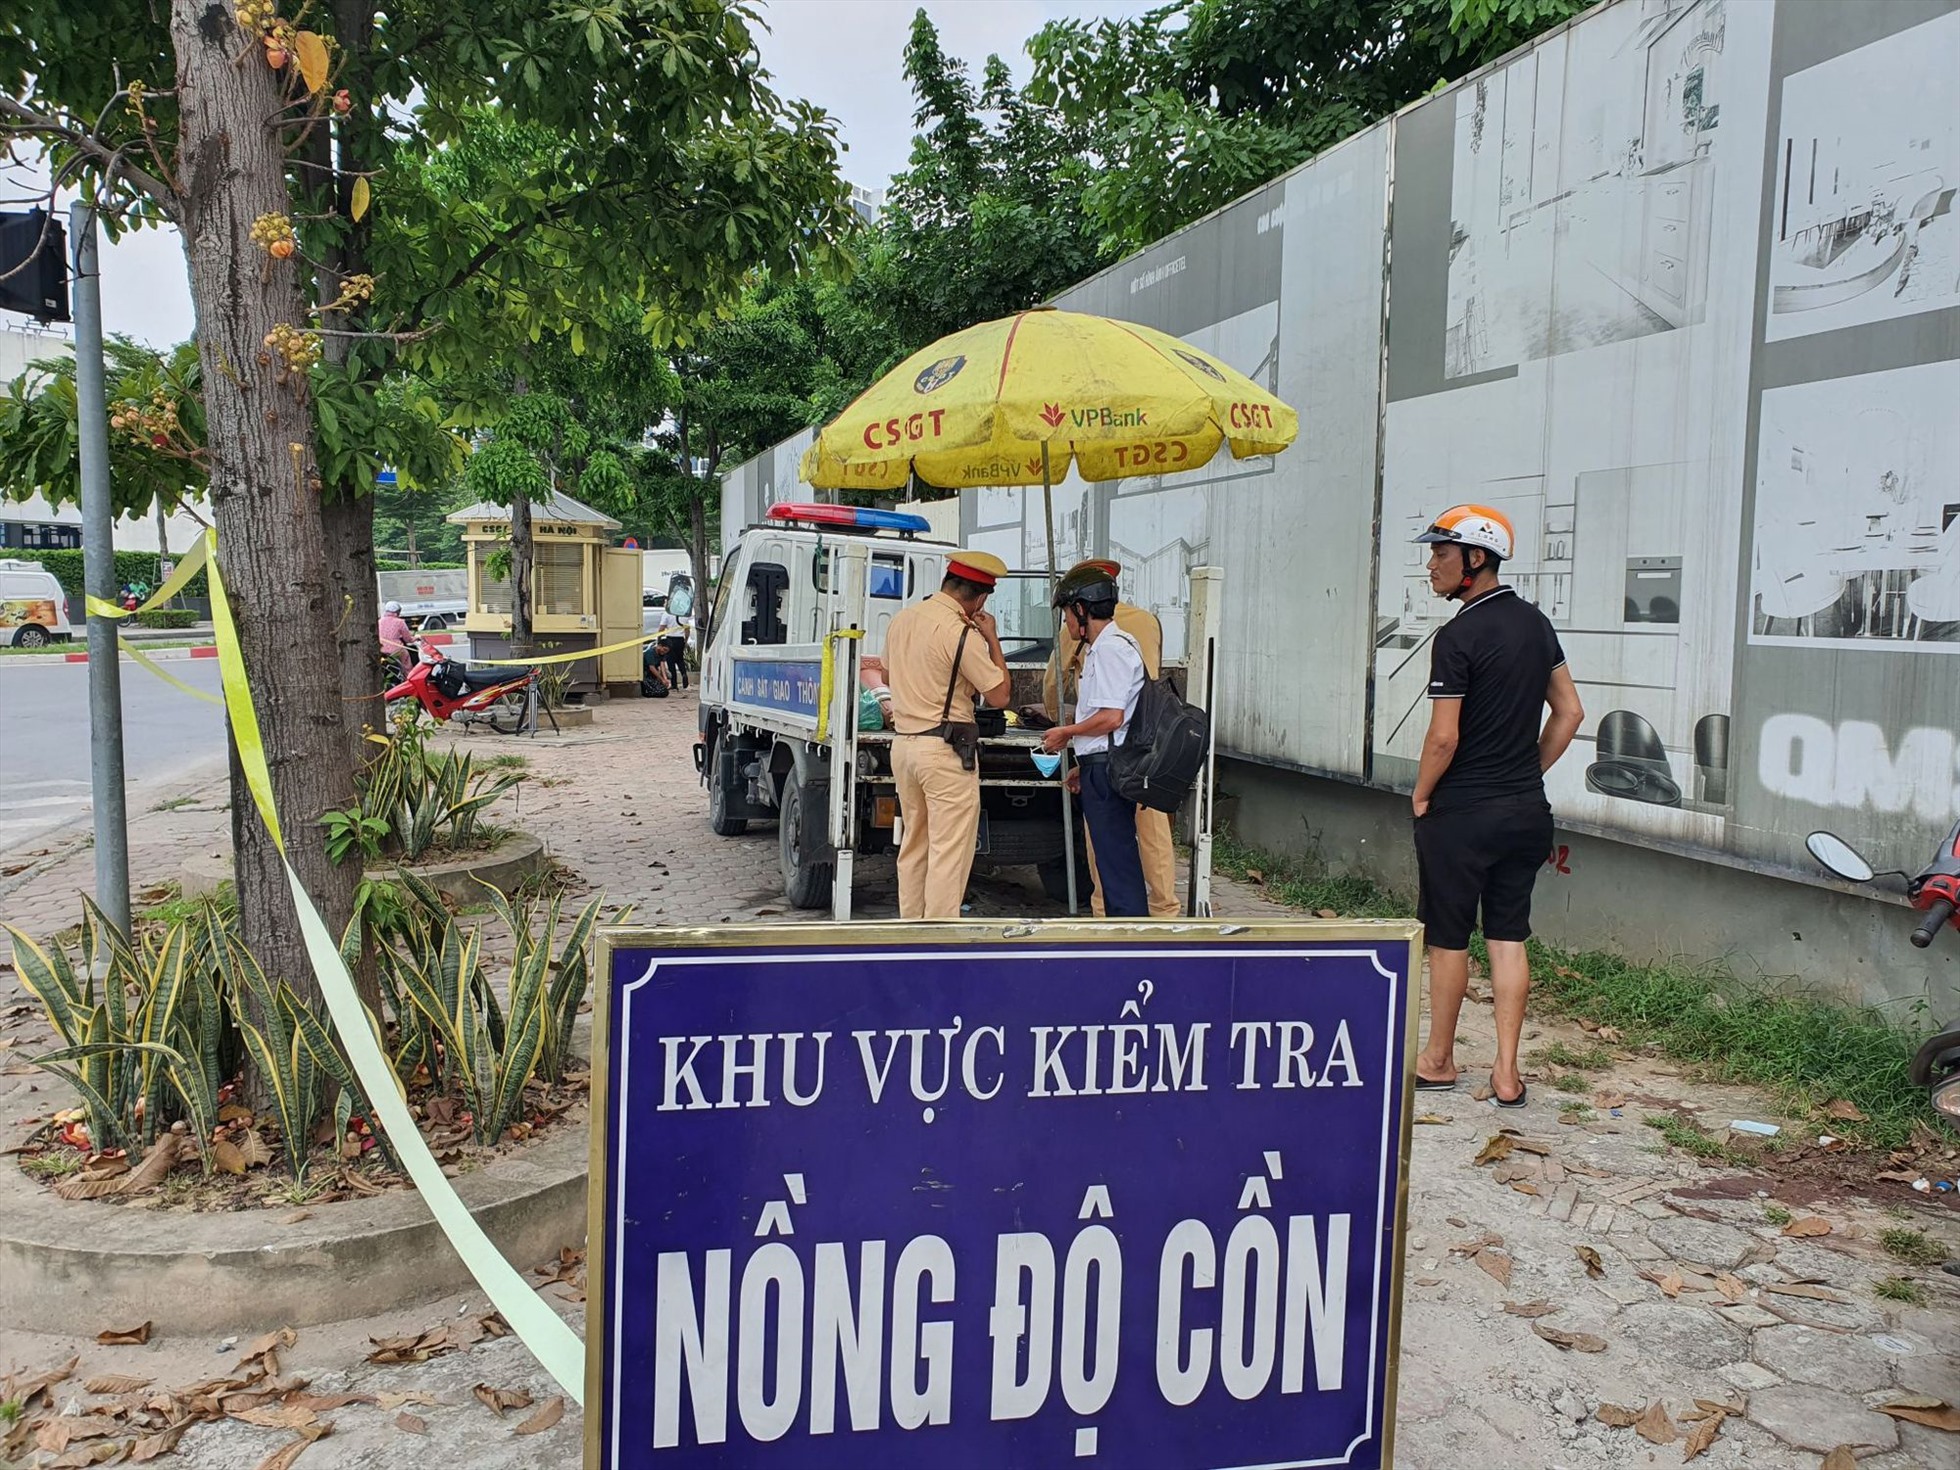 Chốt kiểm tra nồng độ cồn tại đường Tố Hữu, Hà Nội. Ảnh: Văn Huế